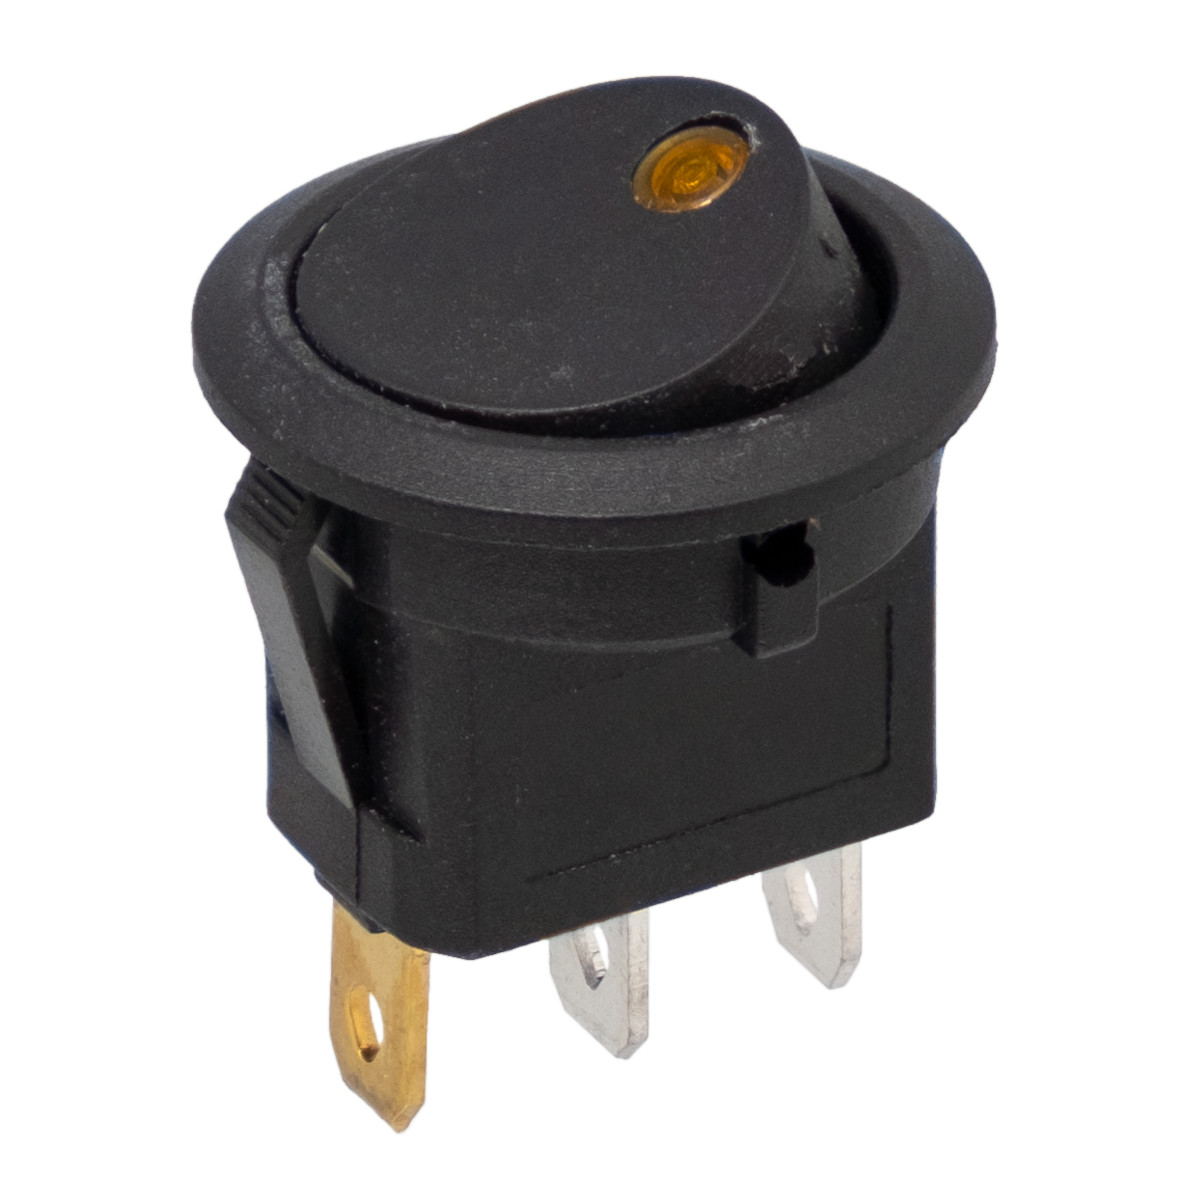 Interruptor con LED amarillo 3P, SPDT ON-OFF, Ø20mm, 250V 6A (125V 10A)